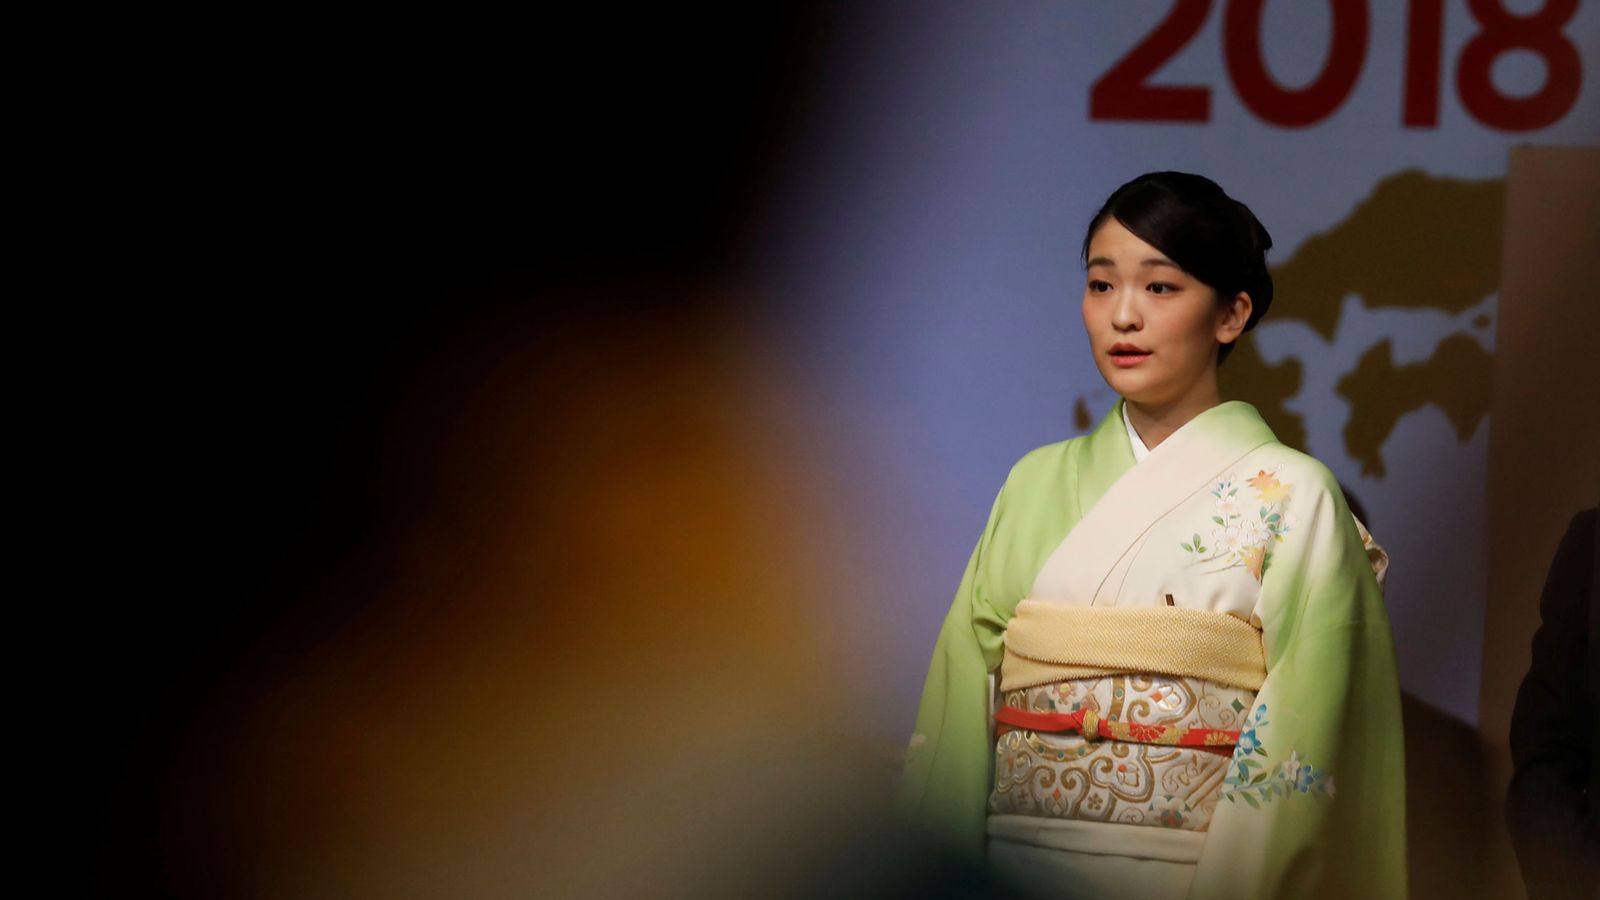 Foto: La princesa Mako en una imagen de archivo. (Reuters)